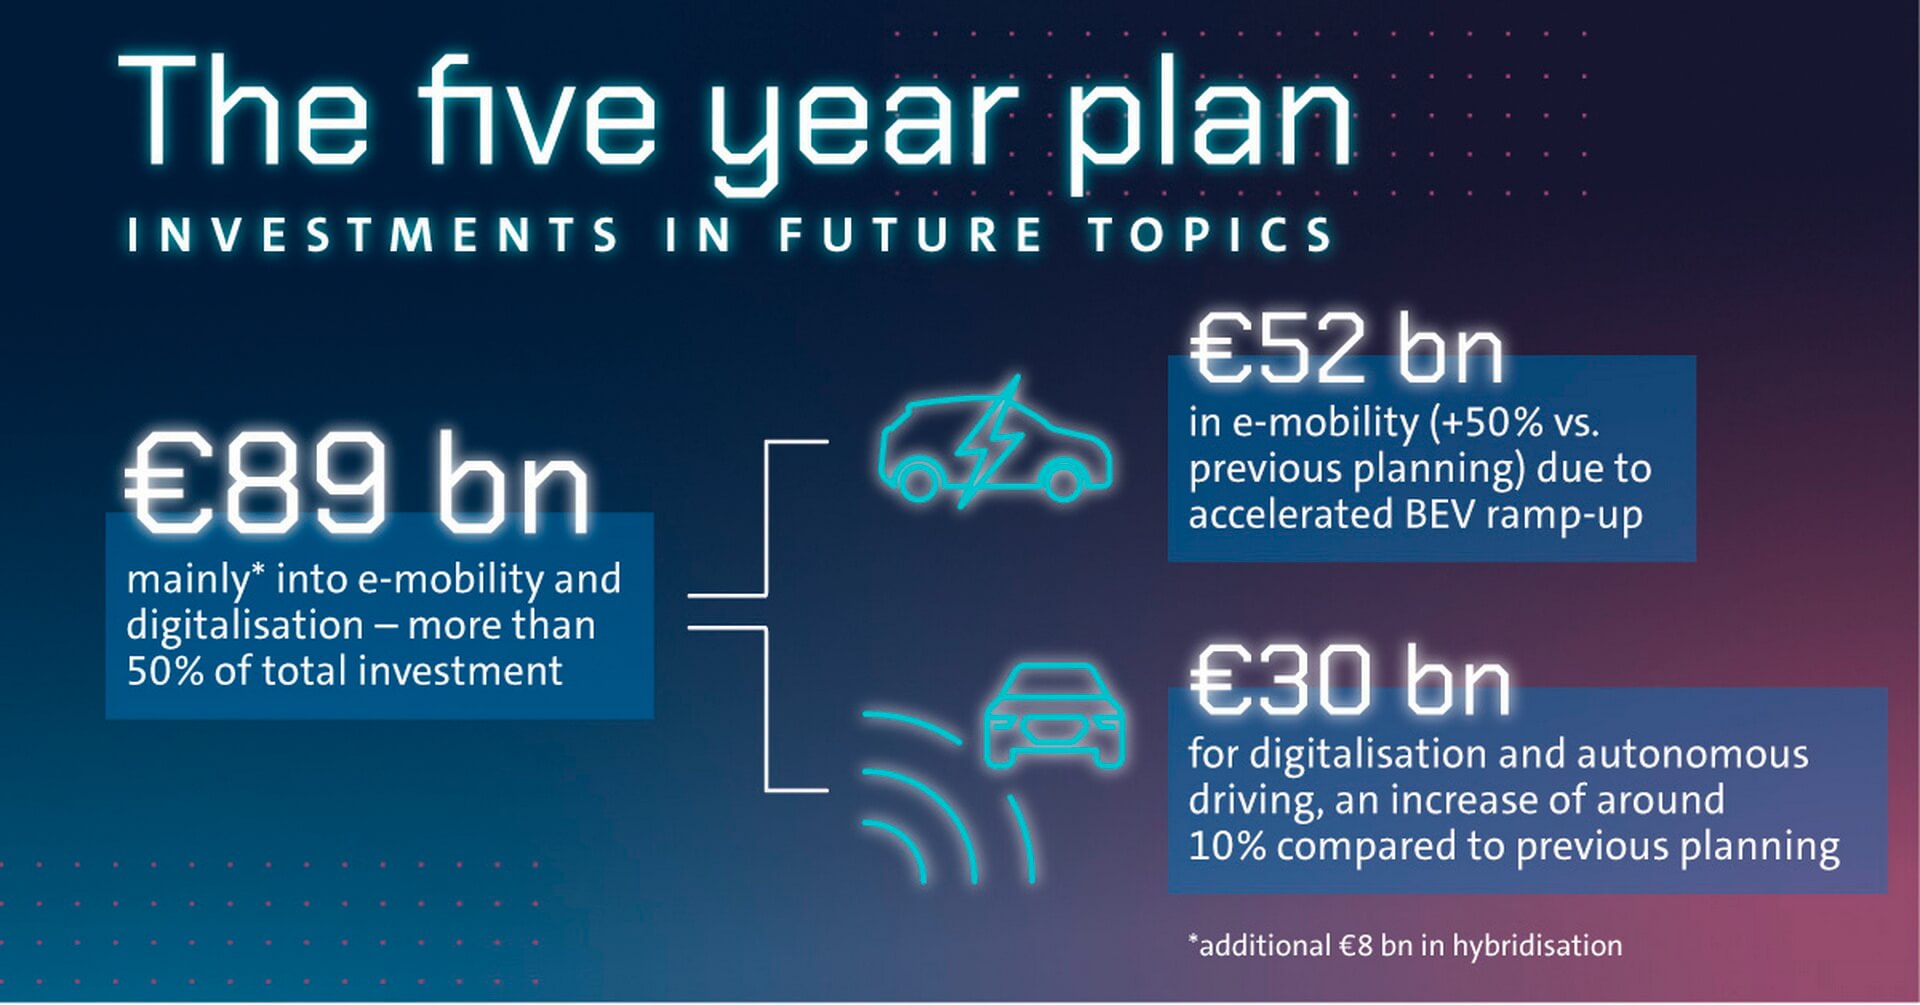 На электрическую мобильность, гибридизацию и цифровизацию было выделено около €89 млрд, что на €16 млрд больше, чем в 69-м раунде планирования